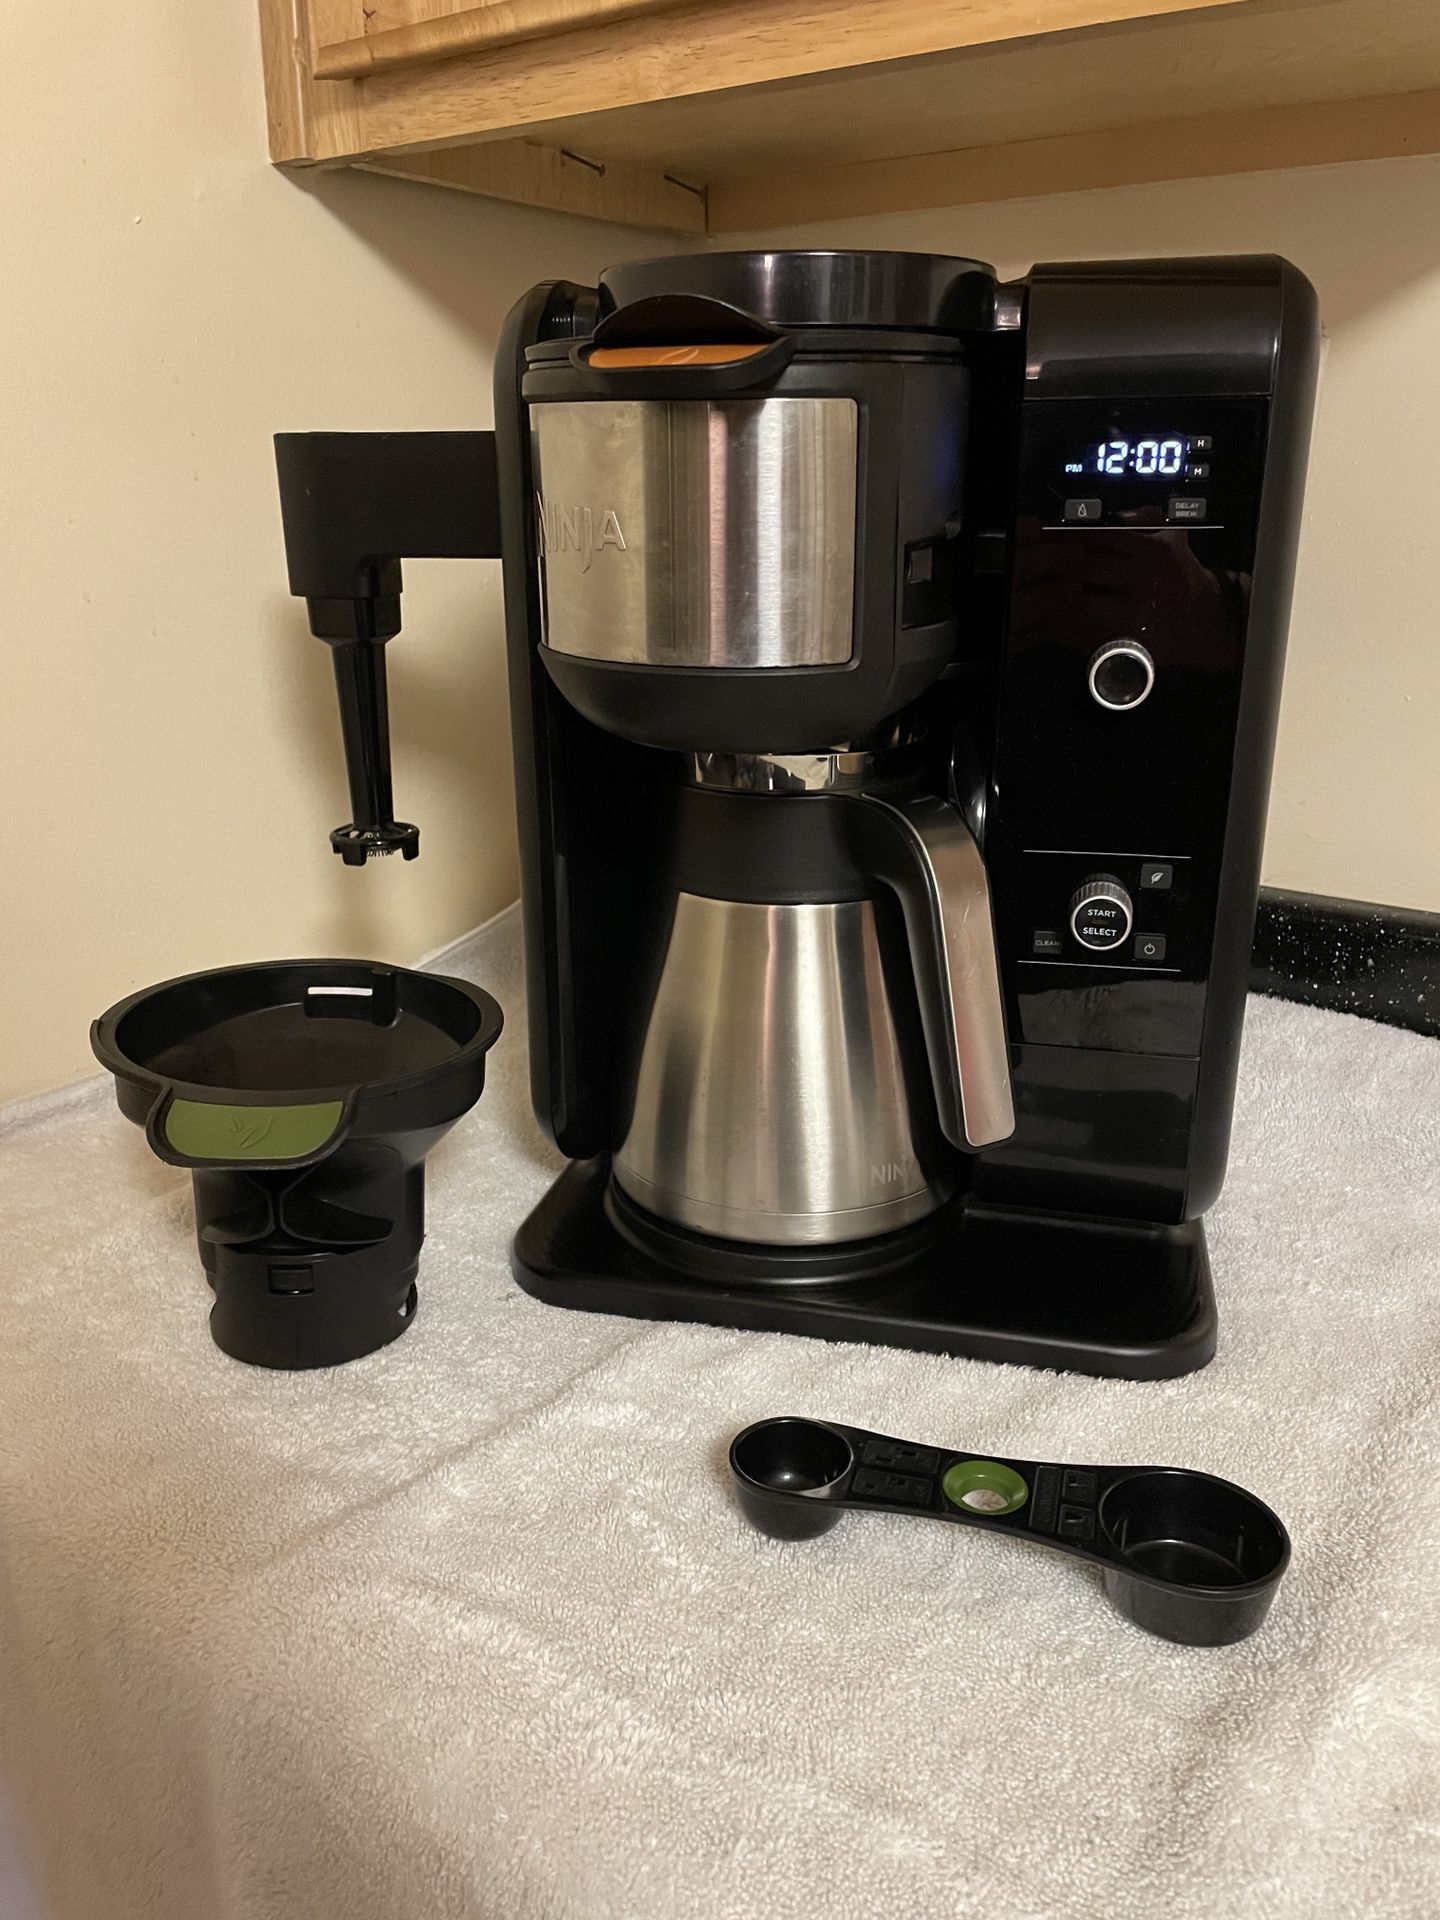 Ninja Coffee Maker for Sale in Mechanicsville, VA - OfferUp